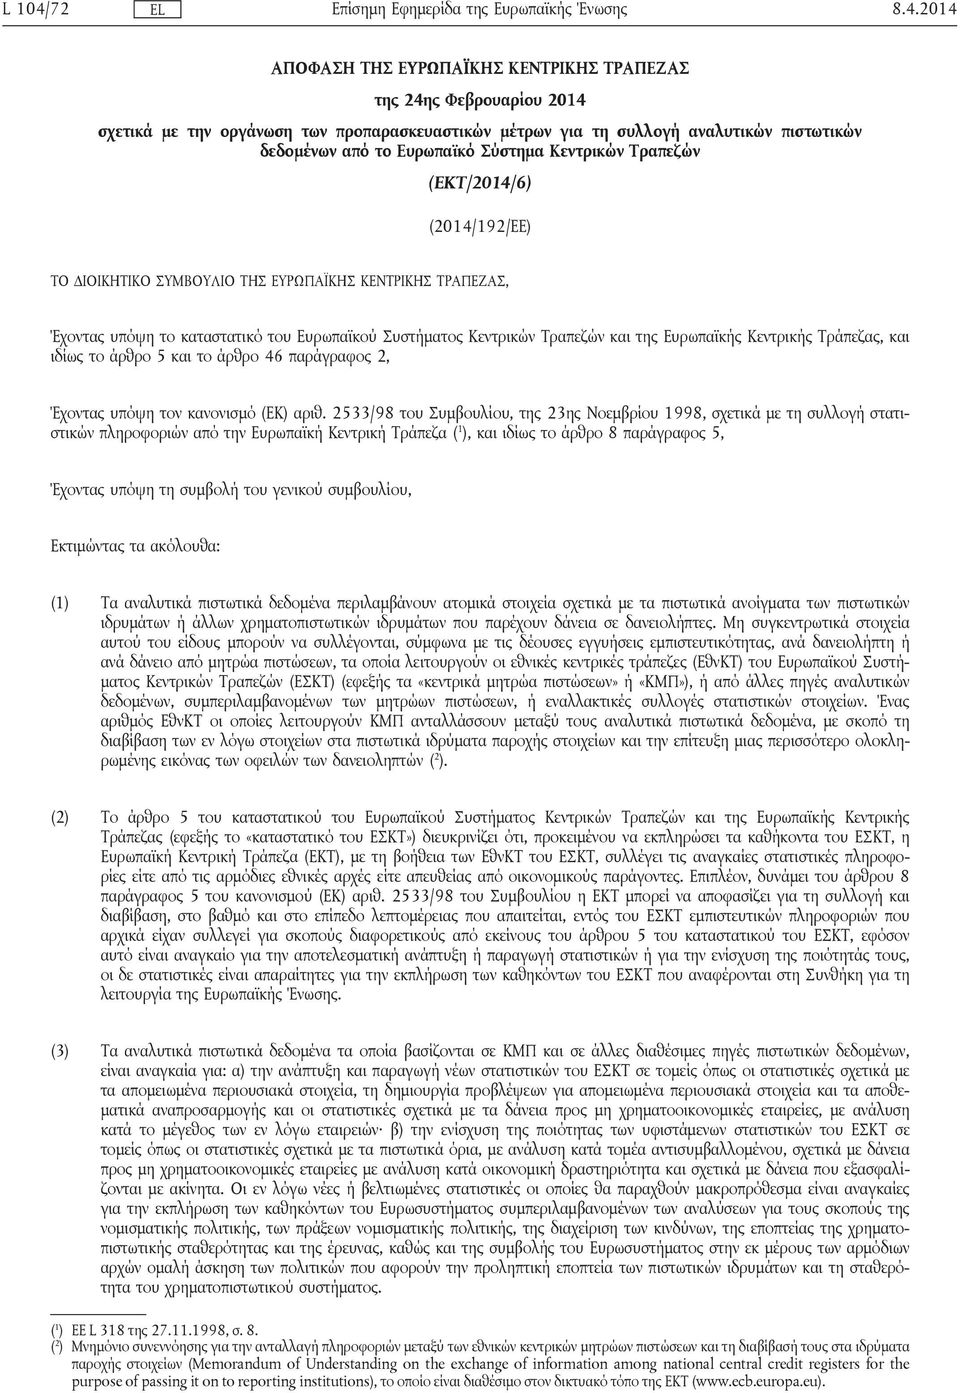 2014 ΑΠΟΦΑΣΗ ΤΗΣ ΕΥΡΩΠΑΪΚΗΣ ΚΕΝΤΡΙΚΗΣ ΤΡΑΠΕΖΑΣ της 24ης Φεβρουαρίου 2014 σχετικά με την οργάνωση των προπαρασκευαστικών μέτρων για τη συλλογή αναλυτικών πιστωτικών δεδομένων από το Ευρωπαϊκό Σύστημα